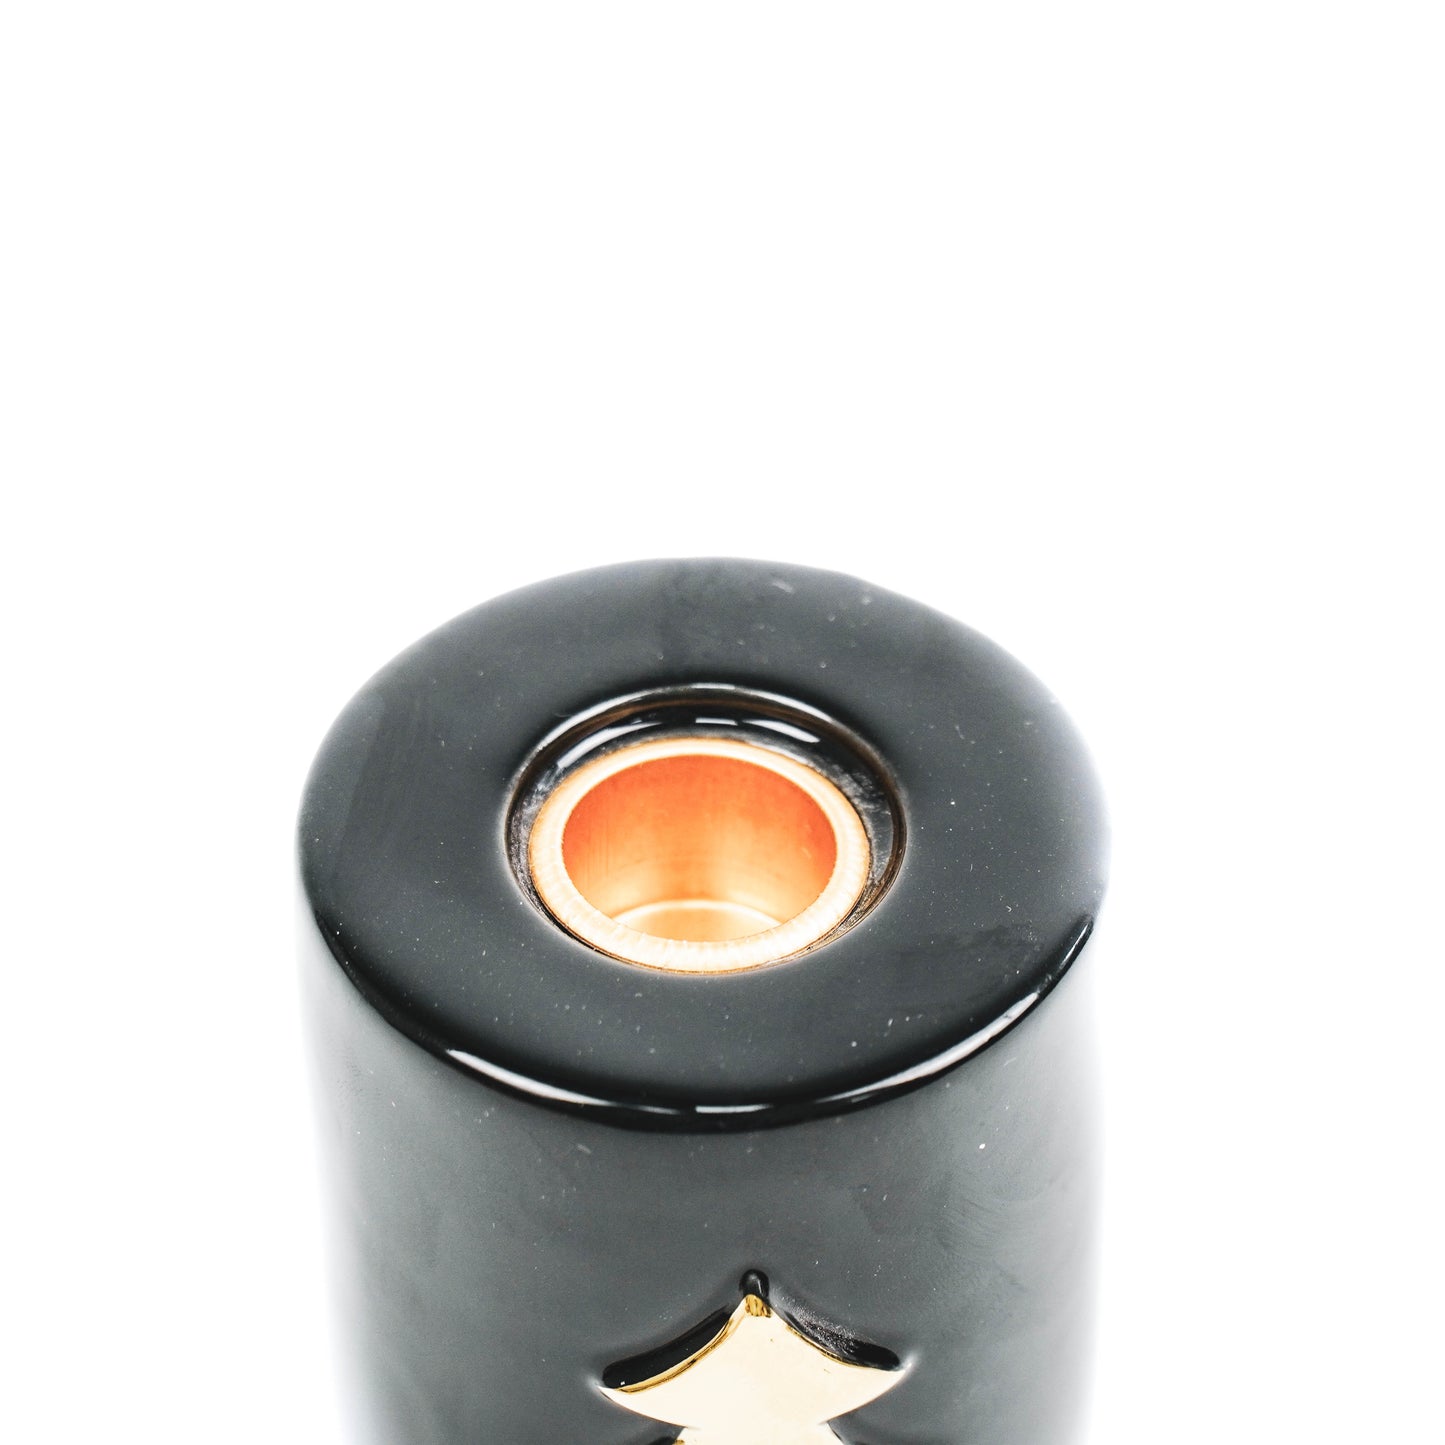 HV Tree Cylinder Candle holder - Black/Gold - 6x6x8cm